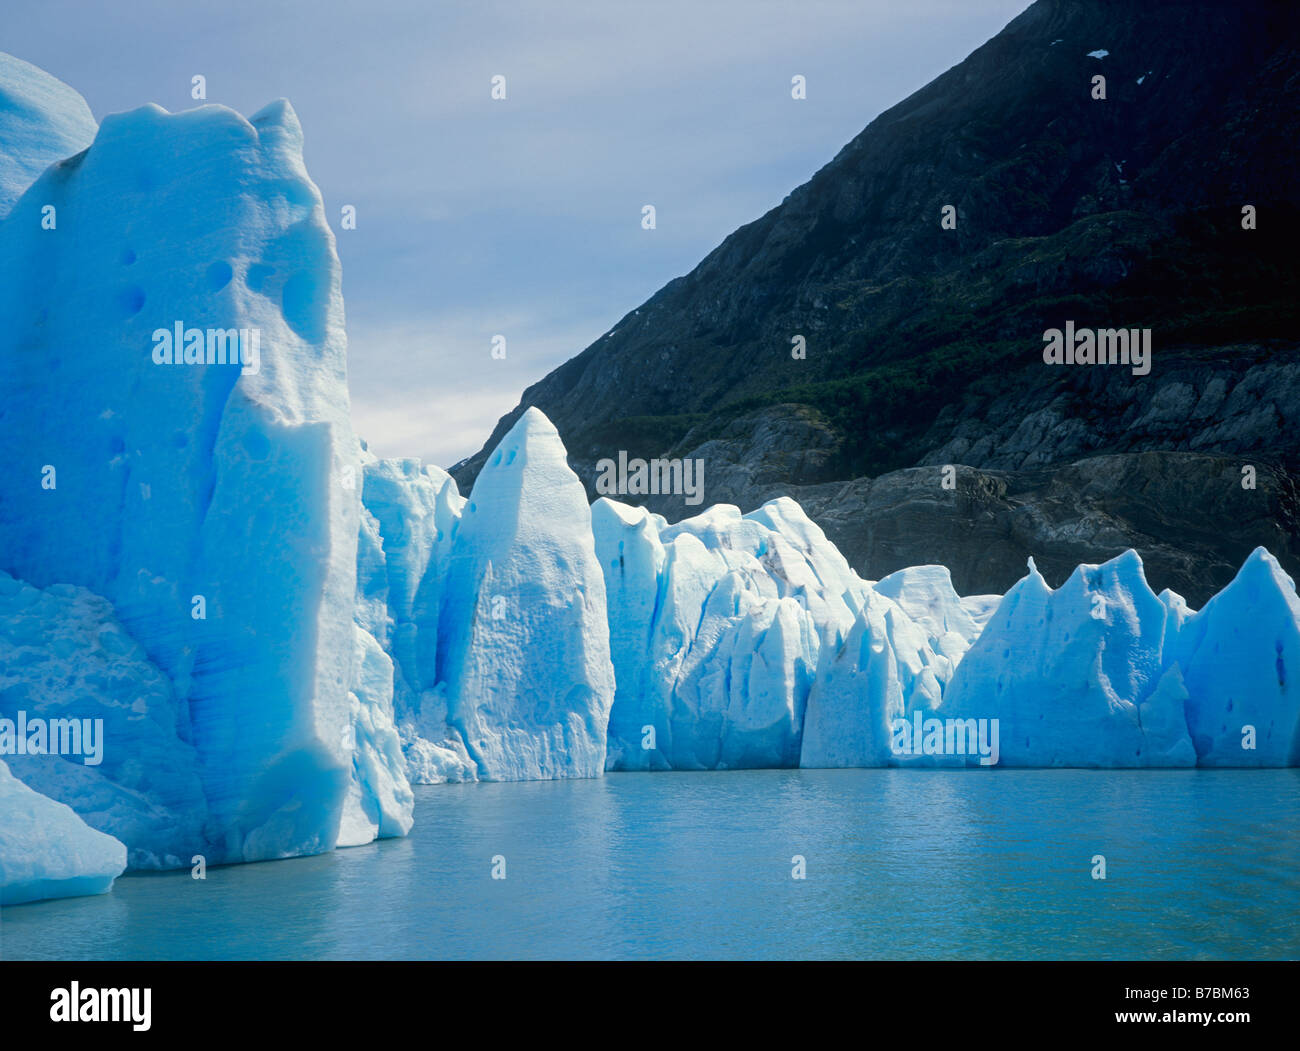 Le grand mur de glace de glacier Grey alors qu'il entre dans le lac Grey DANS LE PARC NATIONAL DES TORRES DEL PAINE PATAGONIE CHILI Banque D'Images